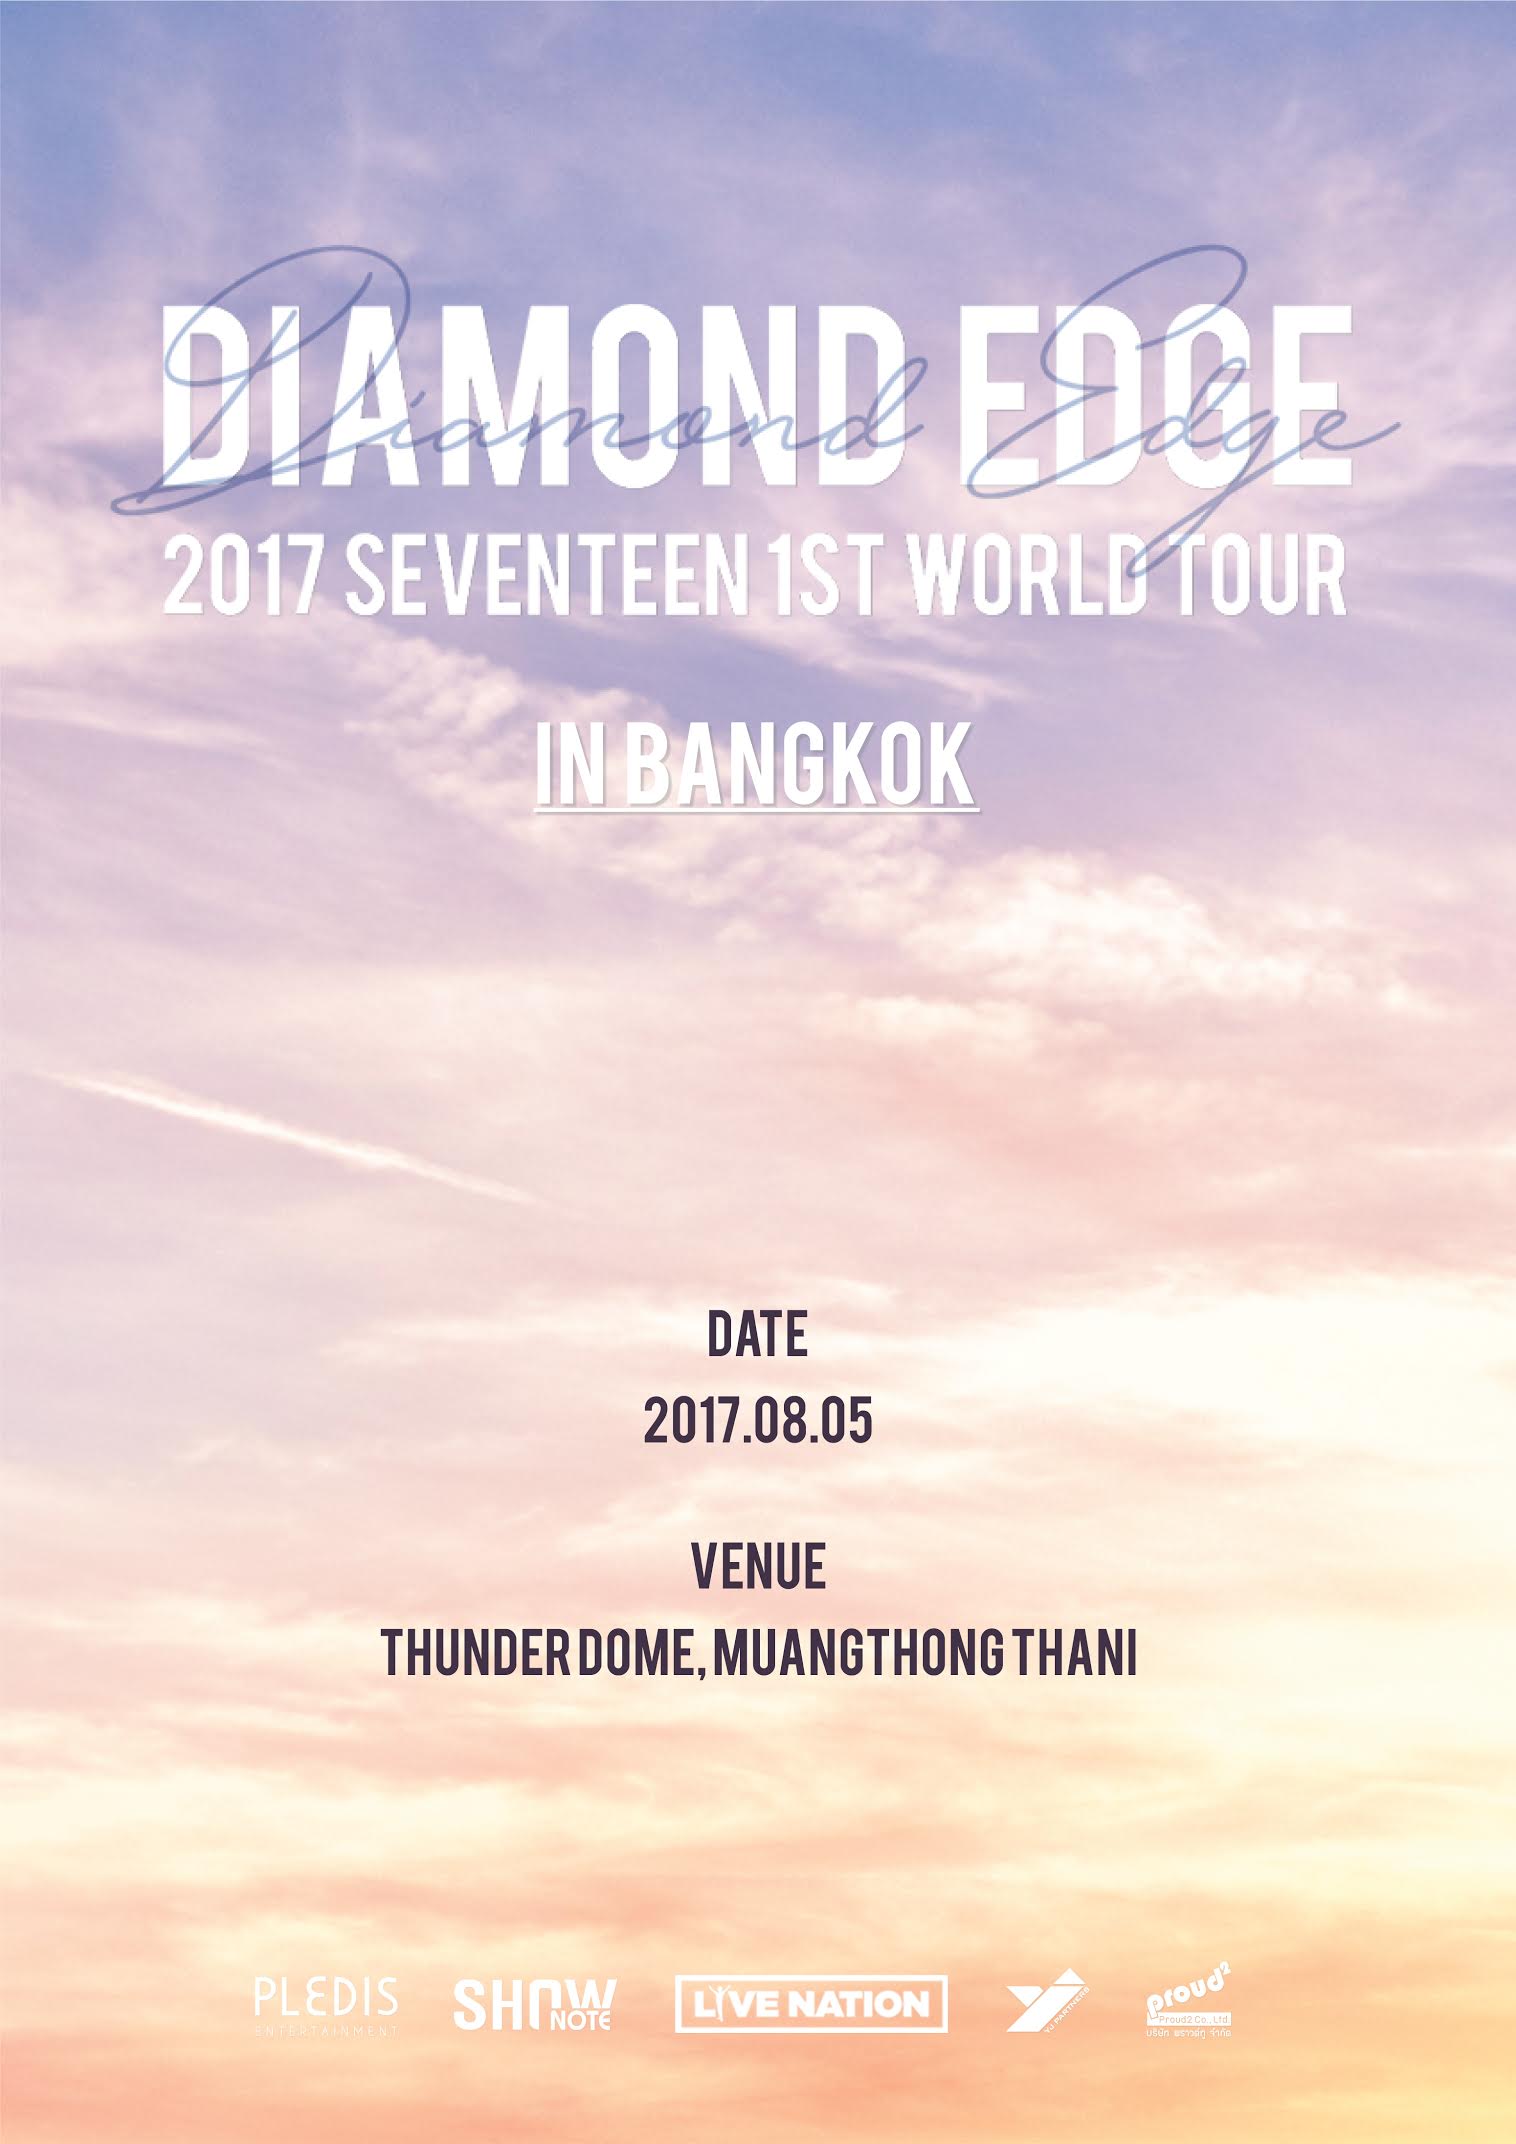 ความสนุก สุดฟิน กำลังจะกลับมาอีกครั้งใน '2017 SEVENTEEN 1ST WORLD TOUR DIAMOND EDGE IN BANGKOK'